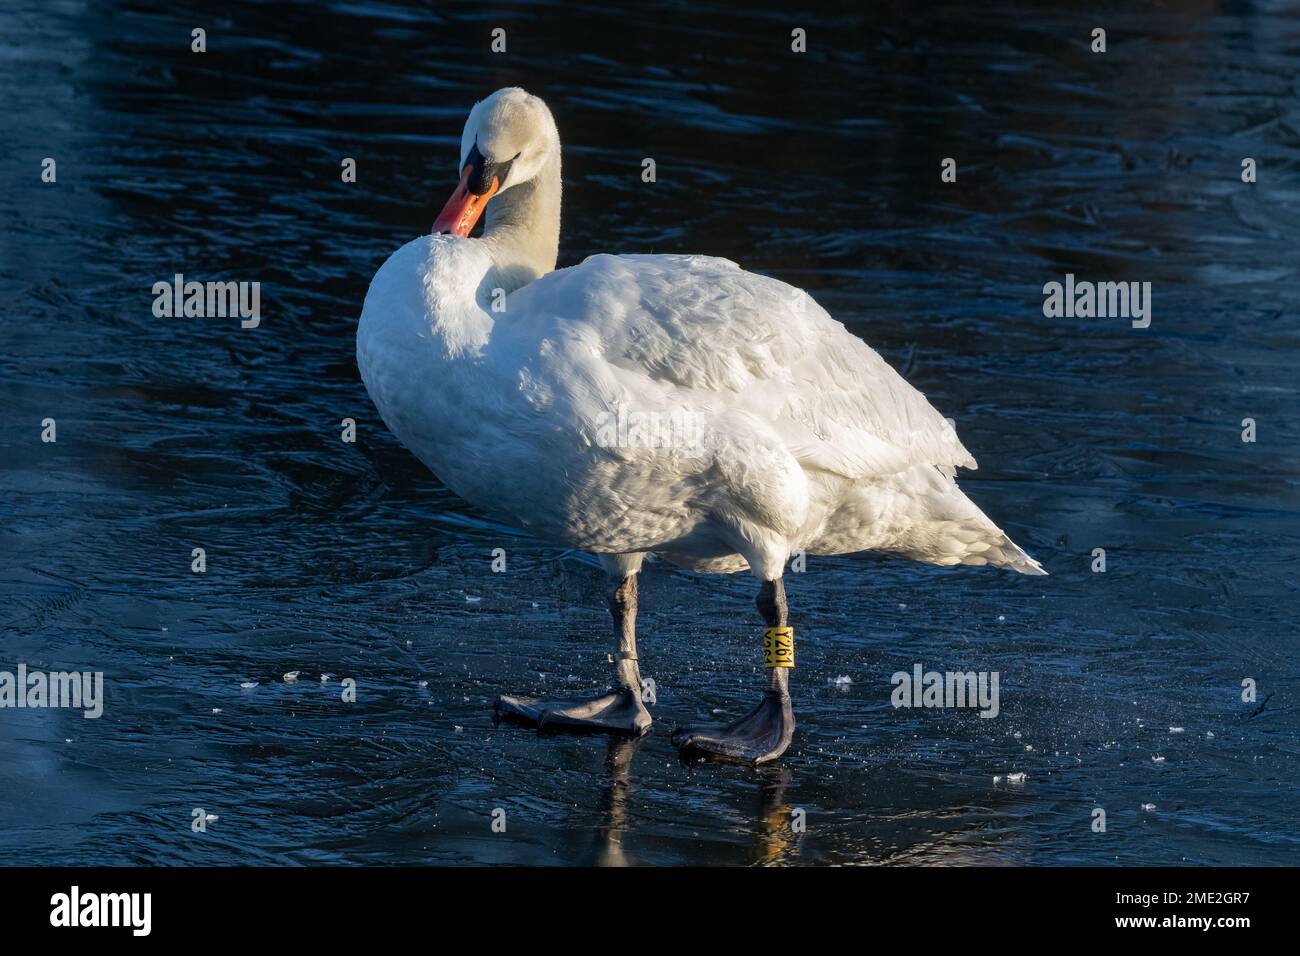 Un solo cisne mudo macho (cygnus olor) de pie en un lago congelado. El cisne tiene un anillo amarillo en su pierna para su identificación. Foto de stock